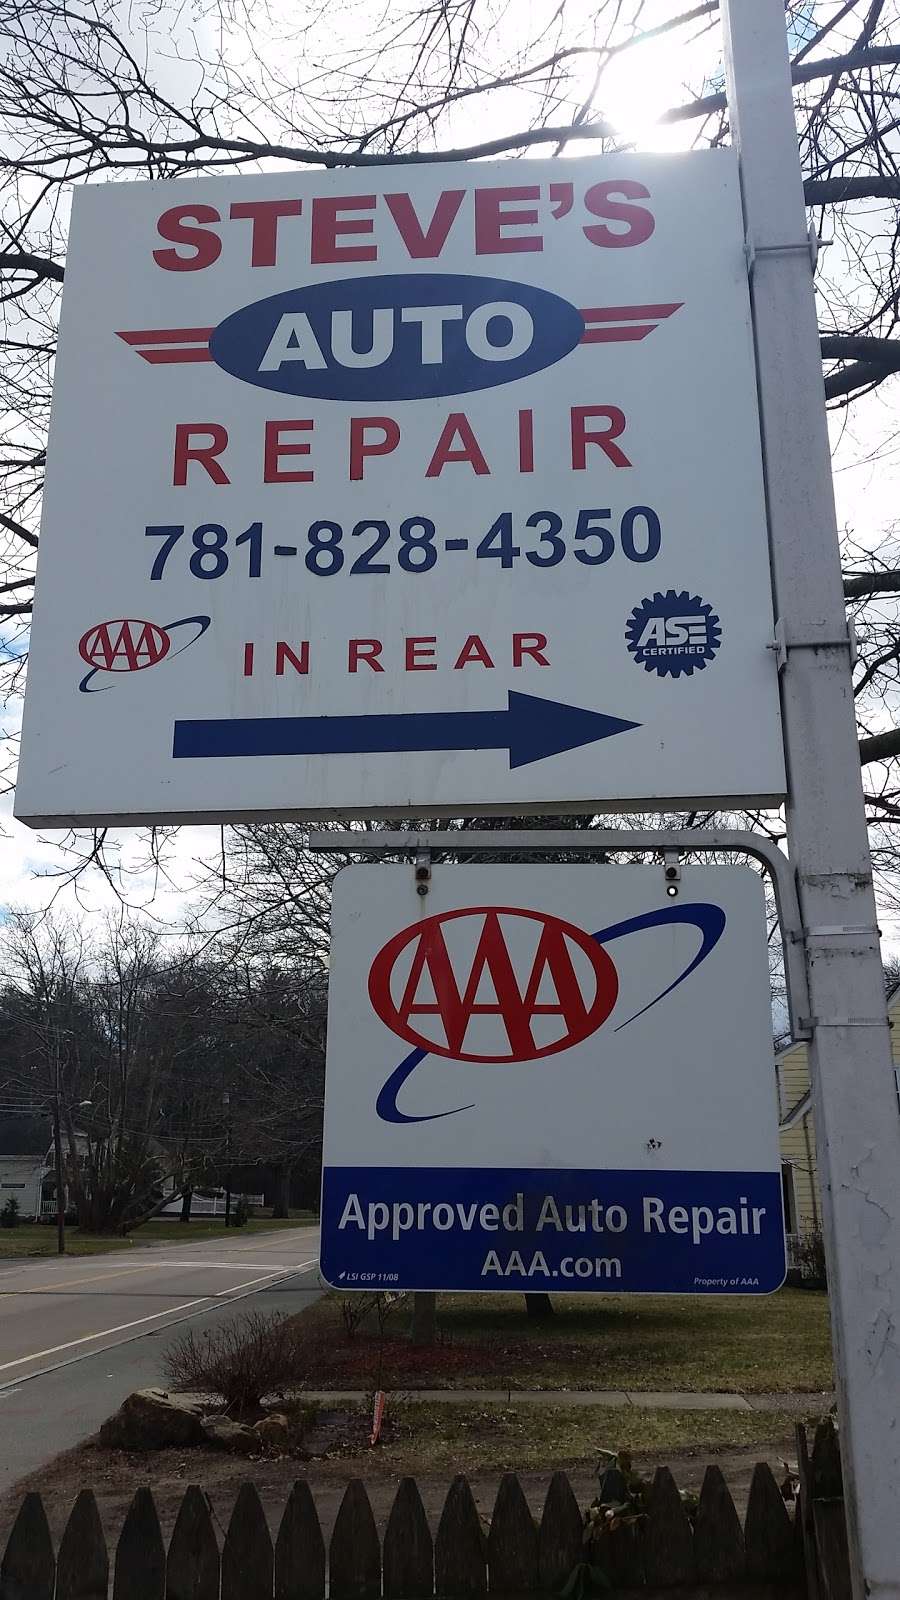 Steves Canton Auto Repair, LLC | 1158 Washington St, Canton, MA 02021, USA | Phone: (781) 828-4350